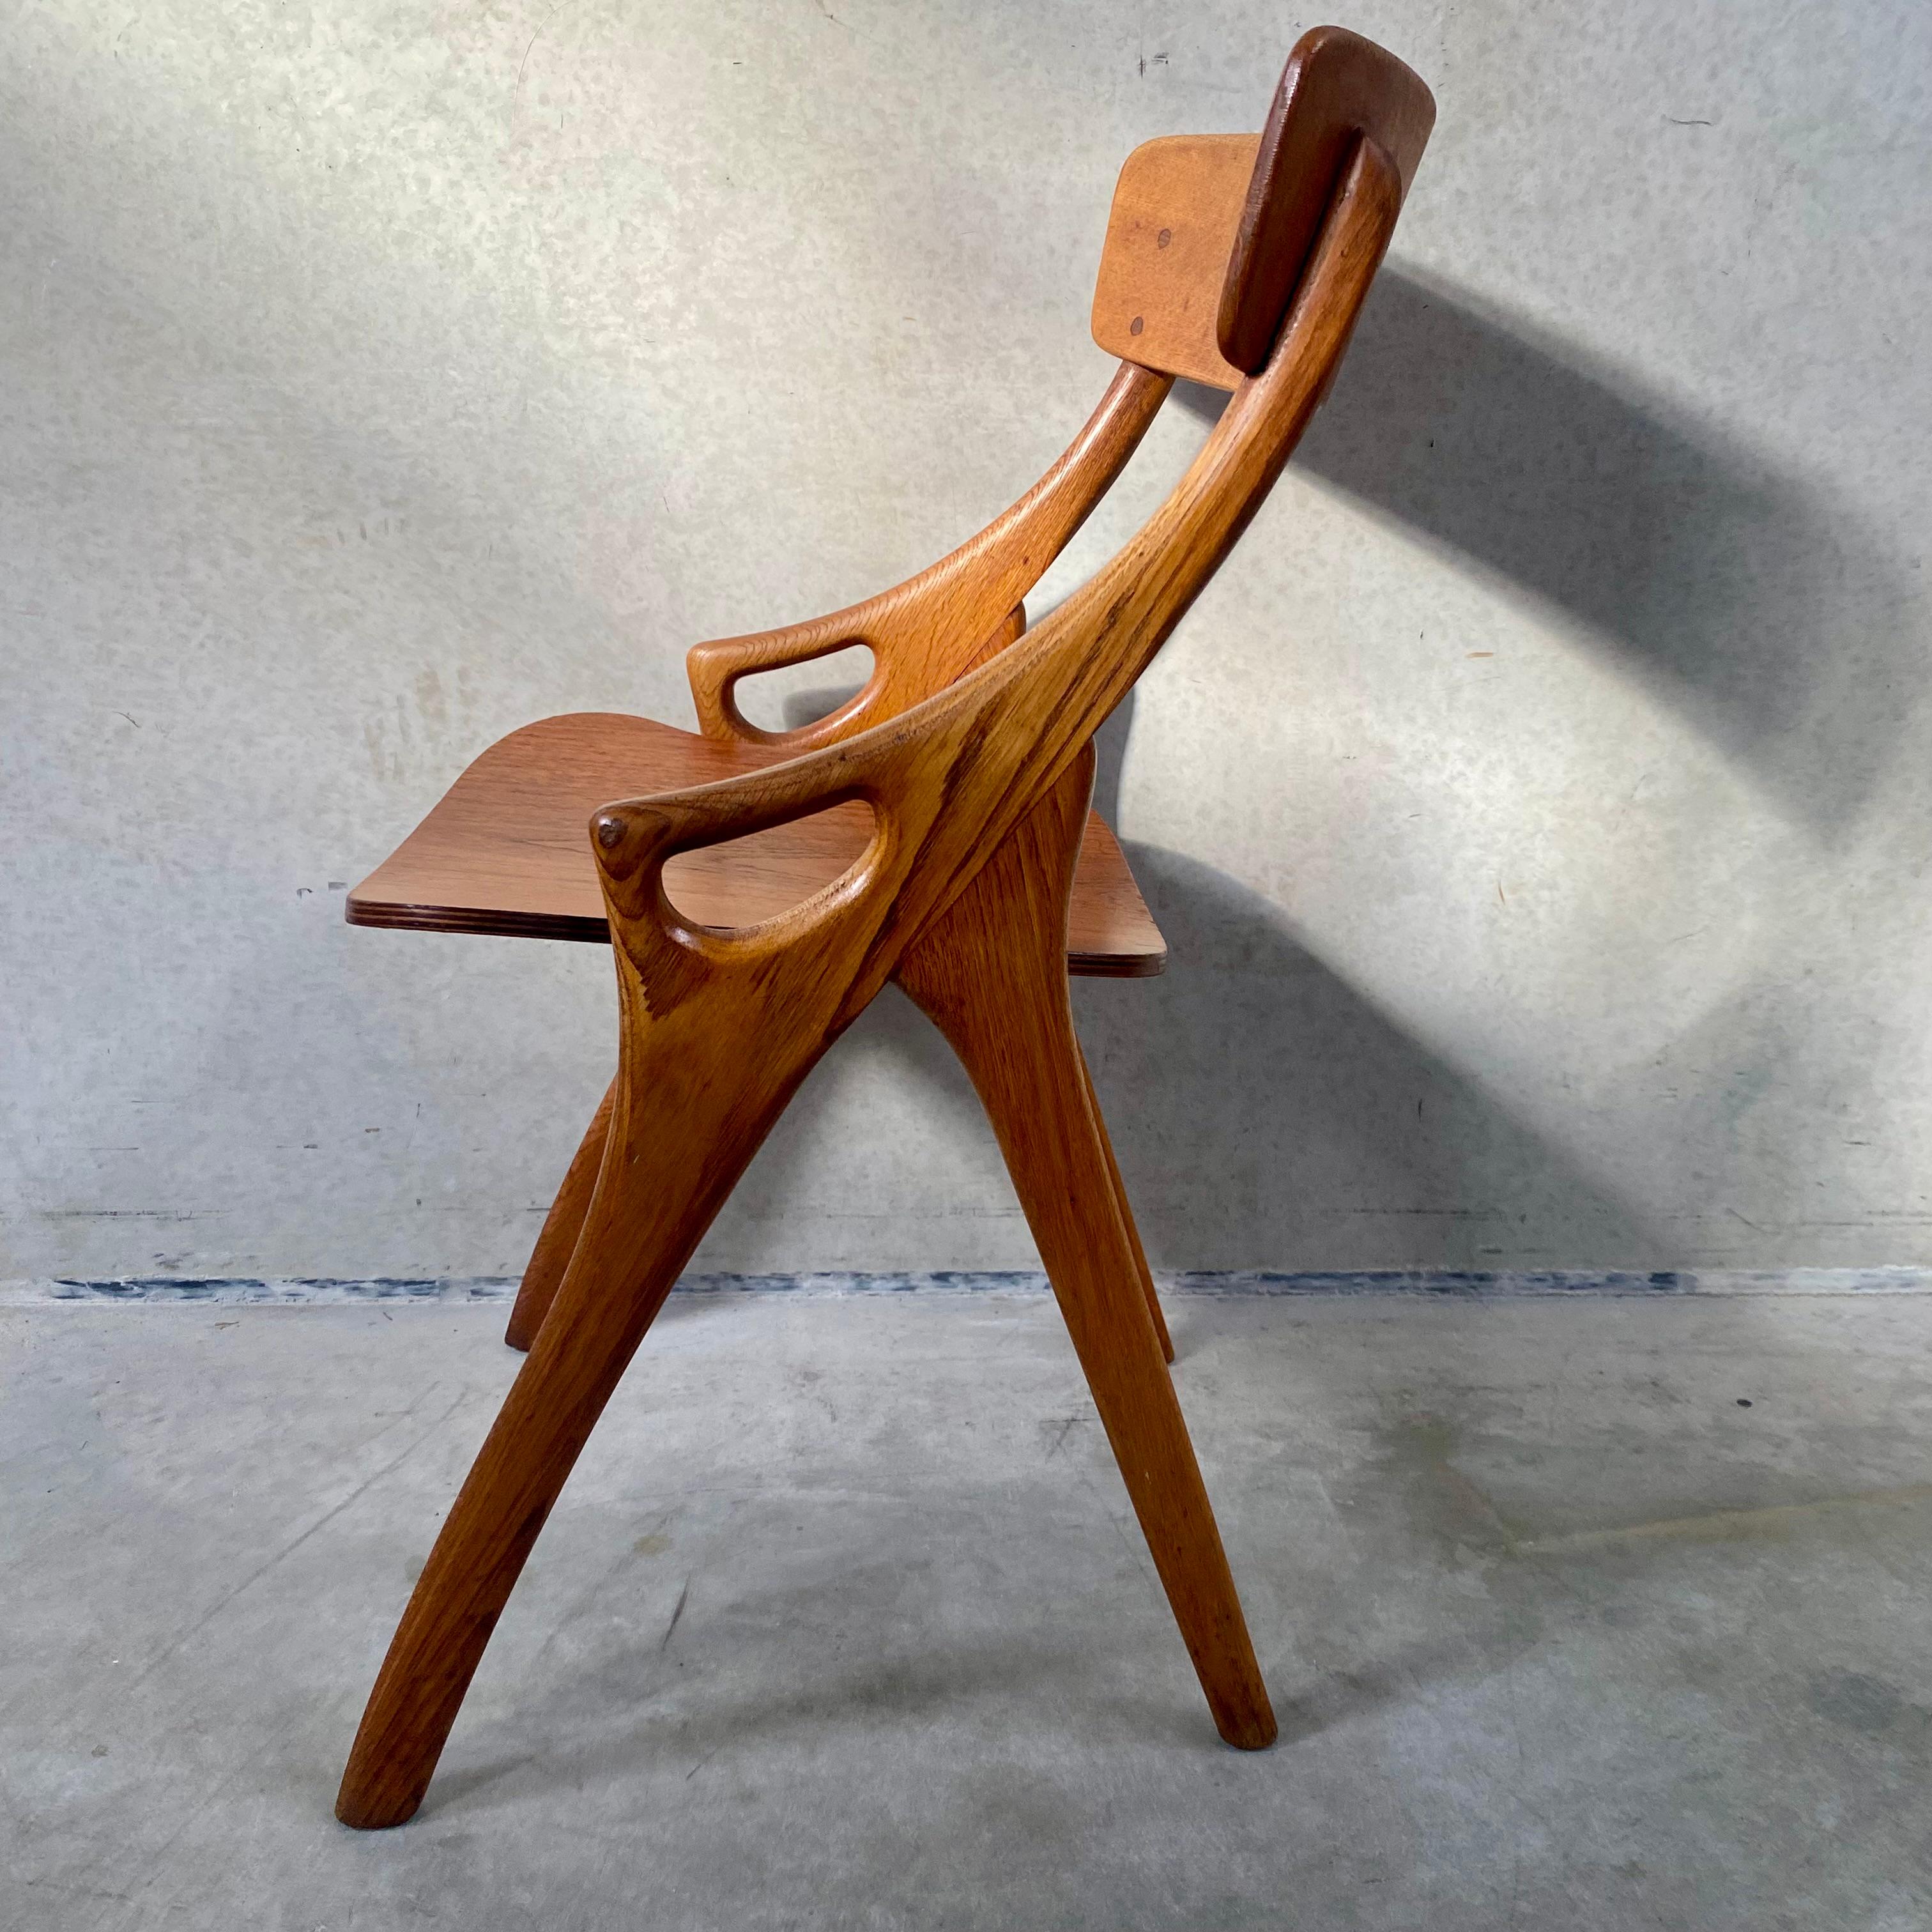 4 Rustic Oak Arne Hovmand Olsen Dining Chairs for Mogens Kold Mobelfabrik 1950 For Sale 2